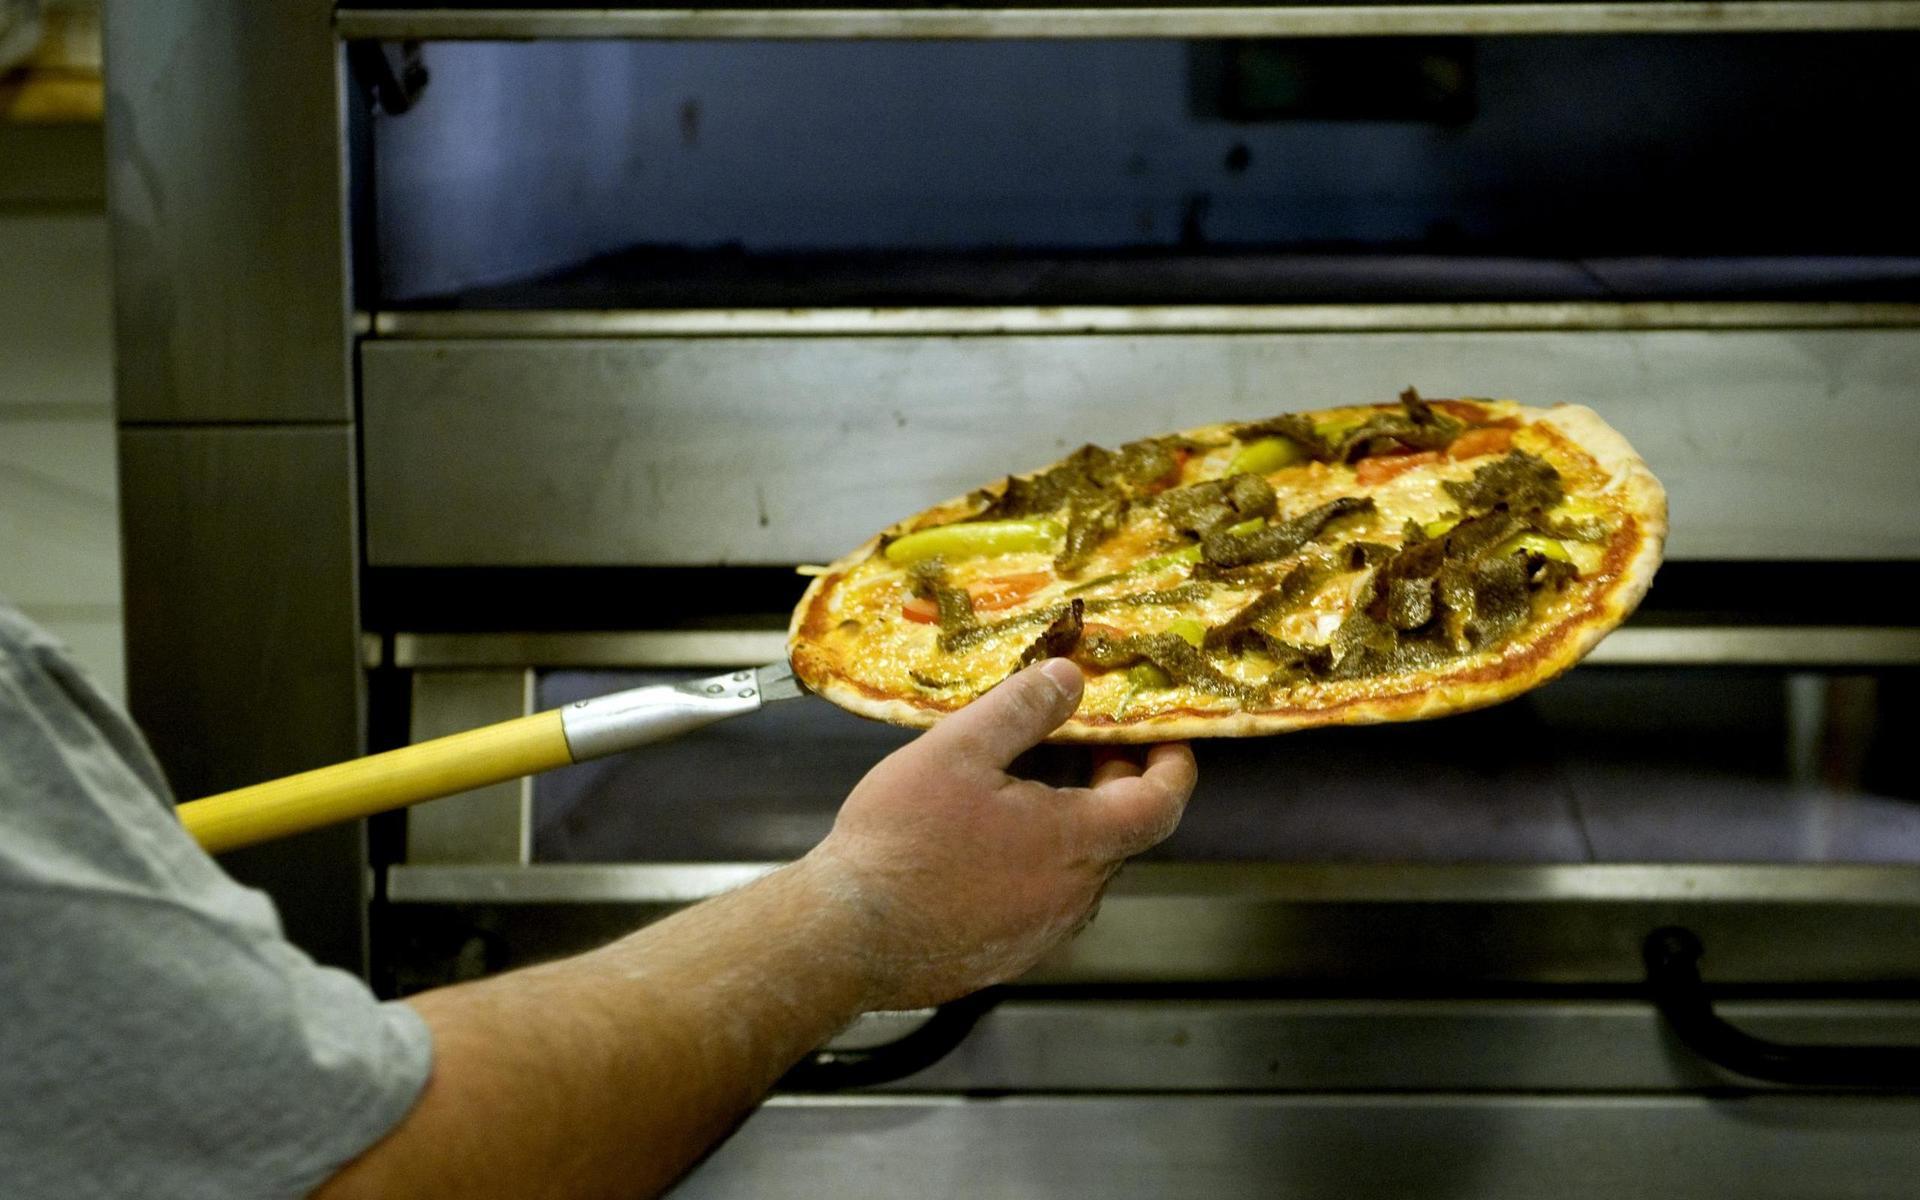 Rafaels pizzeria är en av Lilla Edets bästa pizzerior enligt omröstningen som gjordes av TTELA:s läsare.